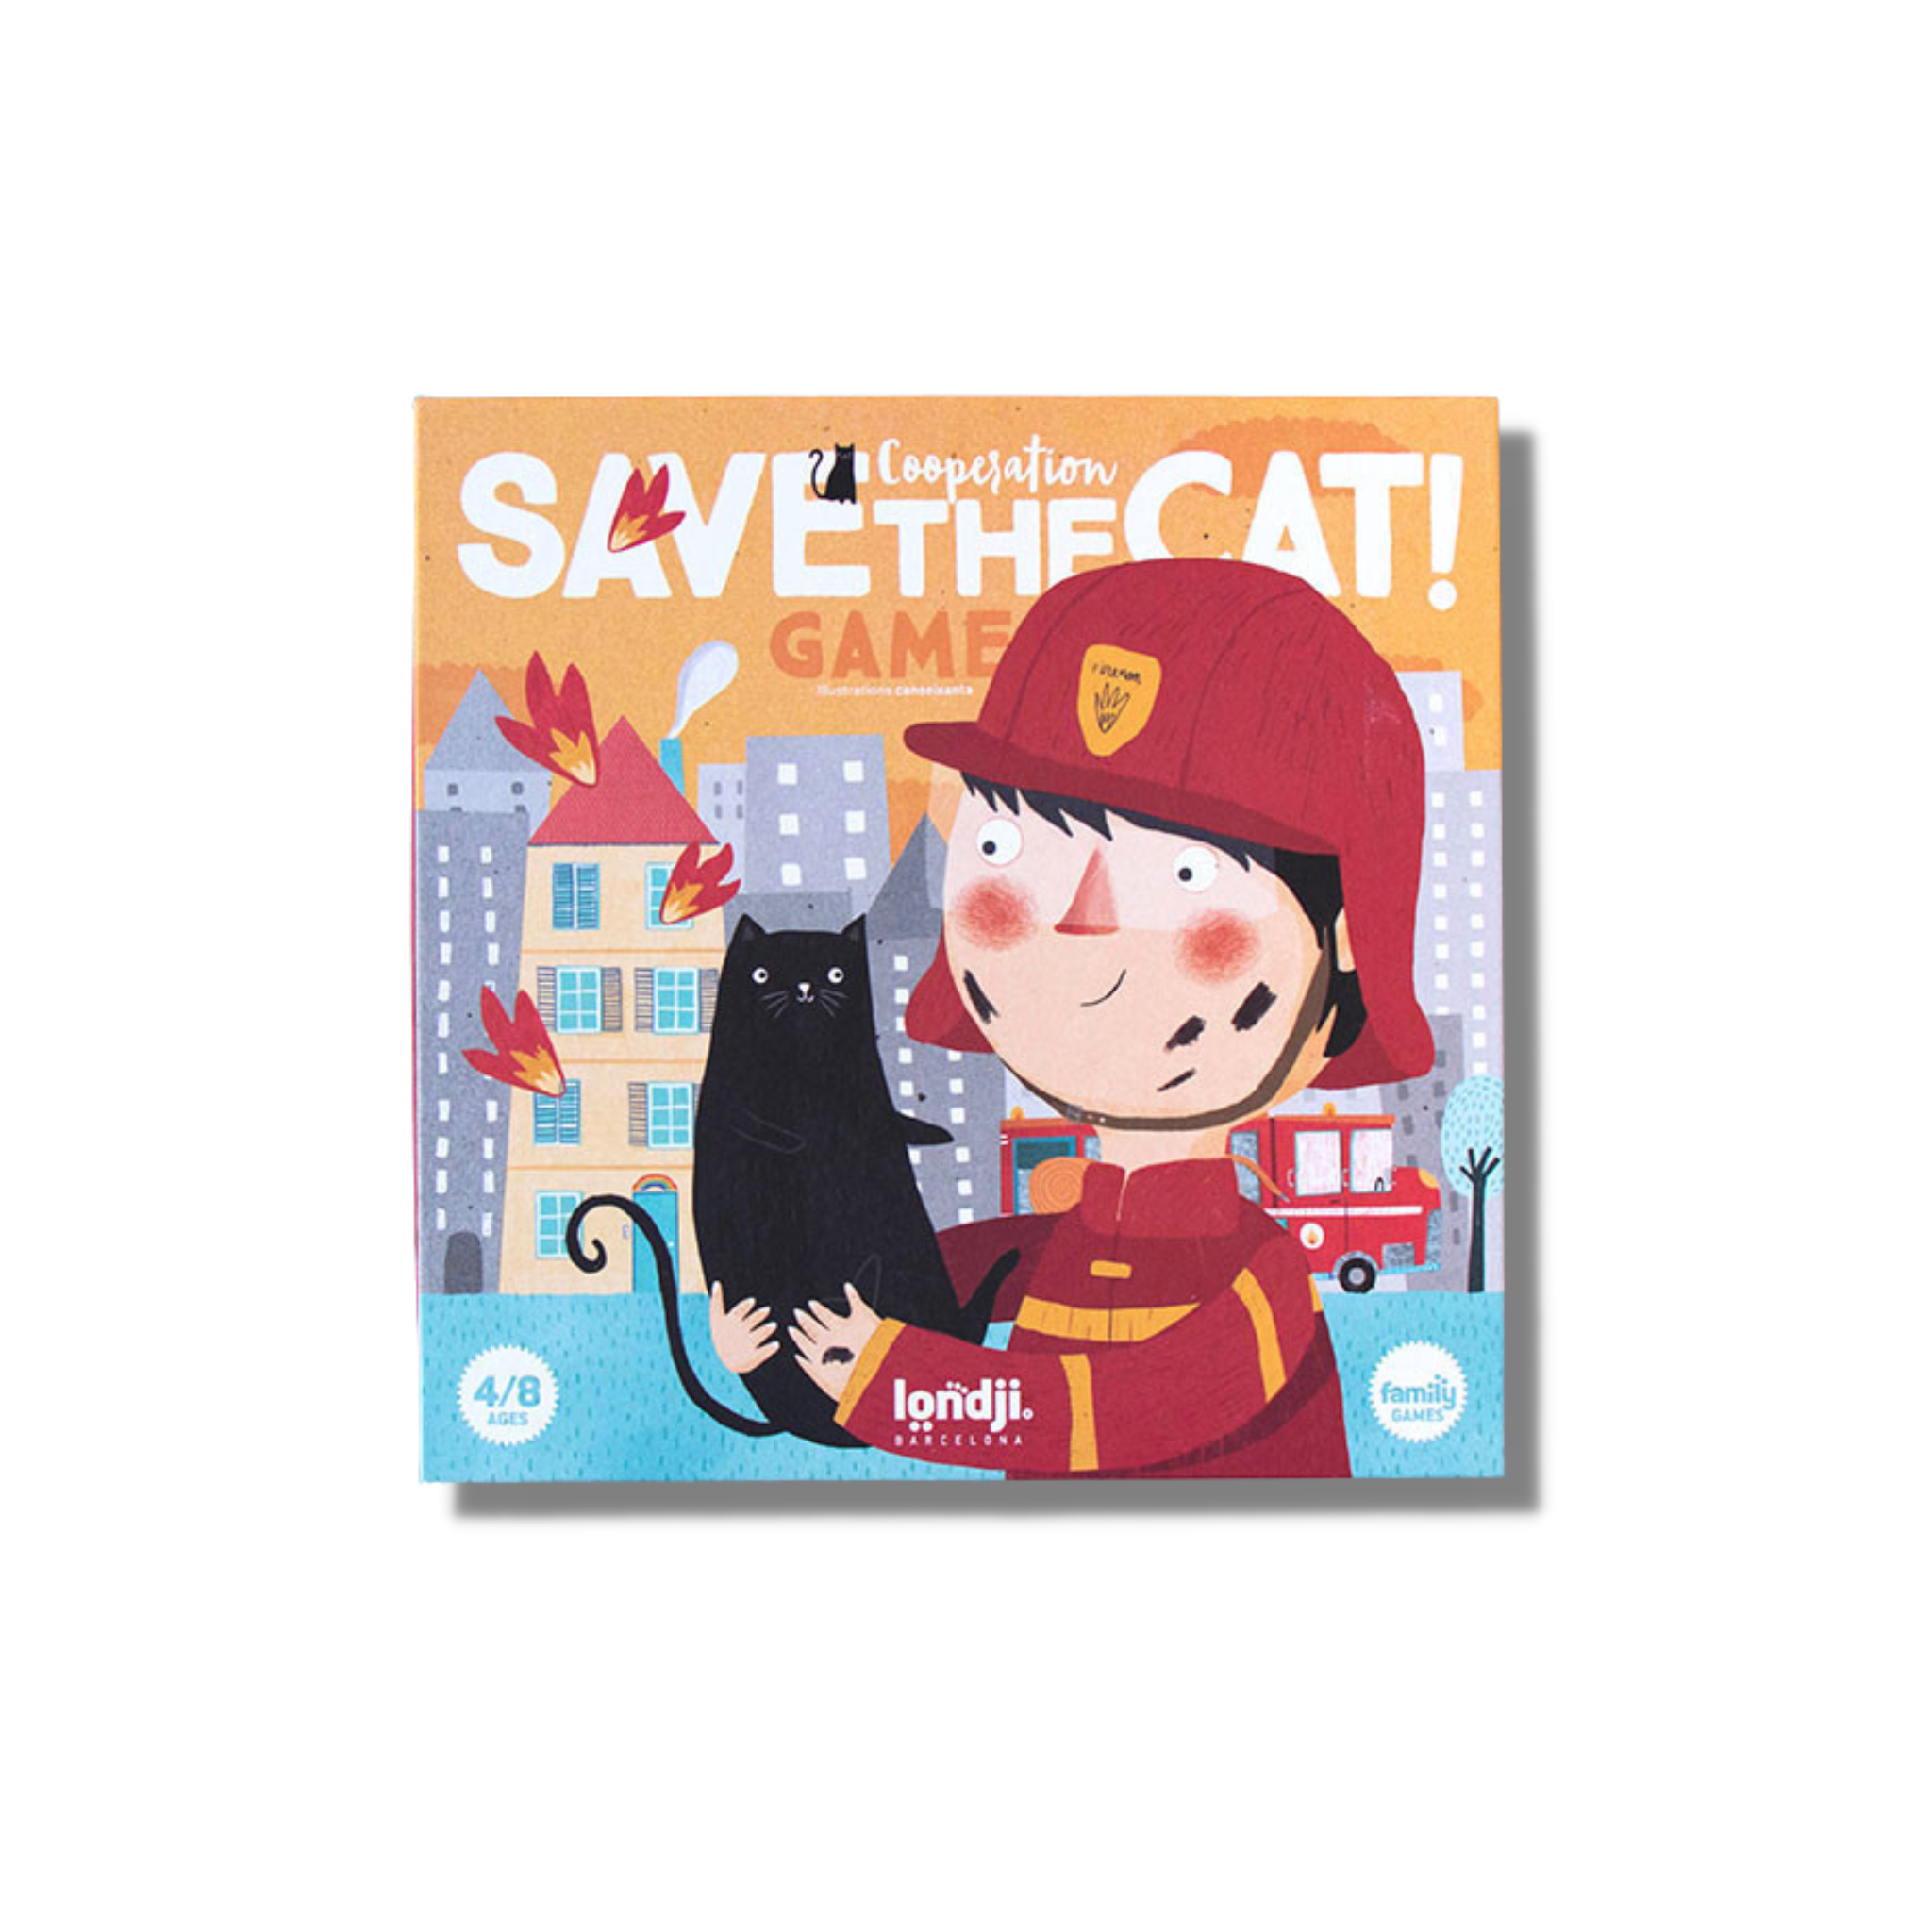 "Save the Cat" - Feuerwehrspiel für Kinder ab 4 Jahren